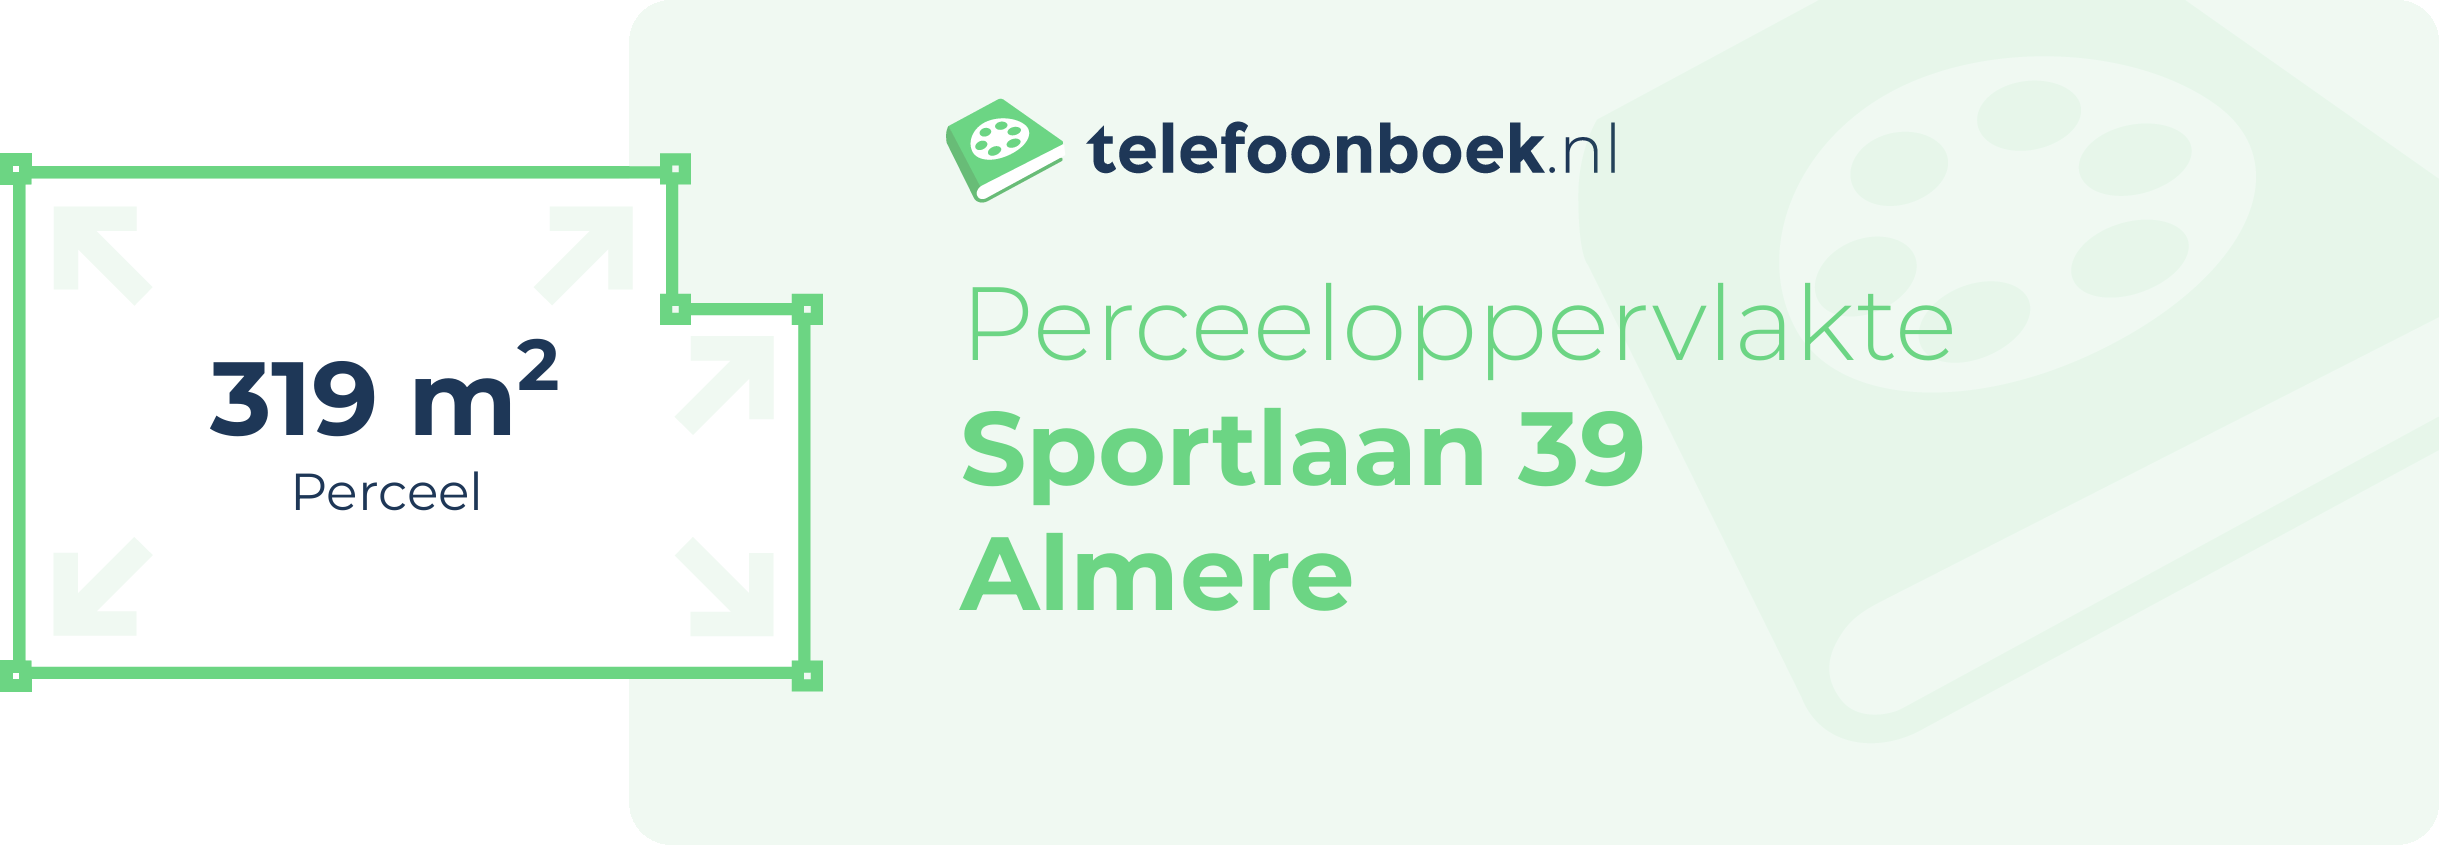 Perceeloppervlakte Sportlaan 39 Almere